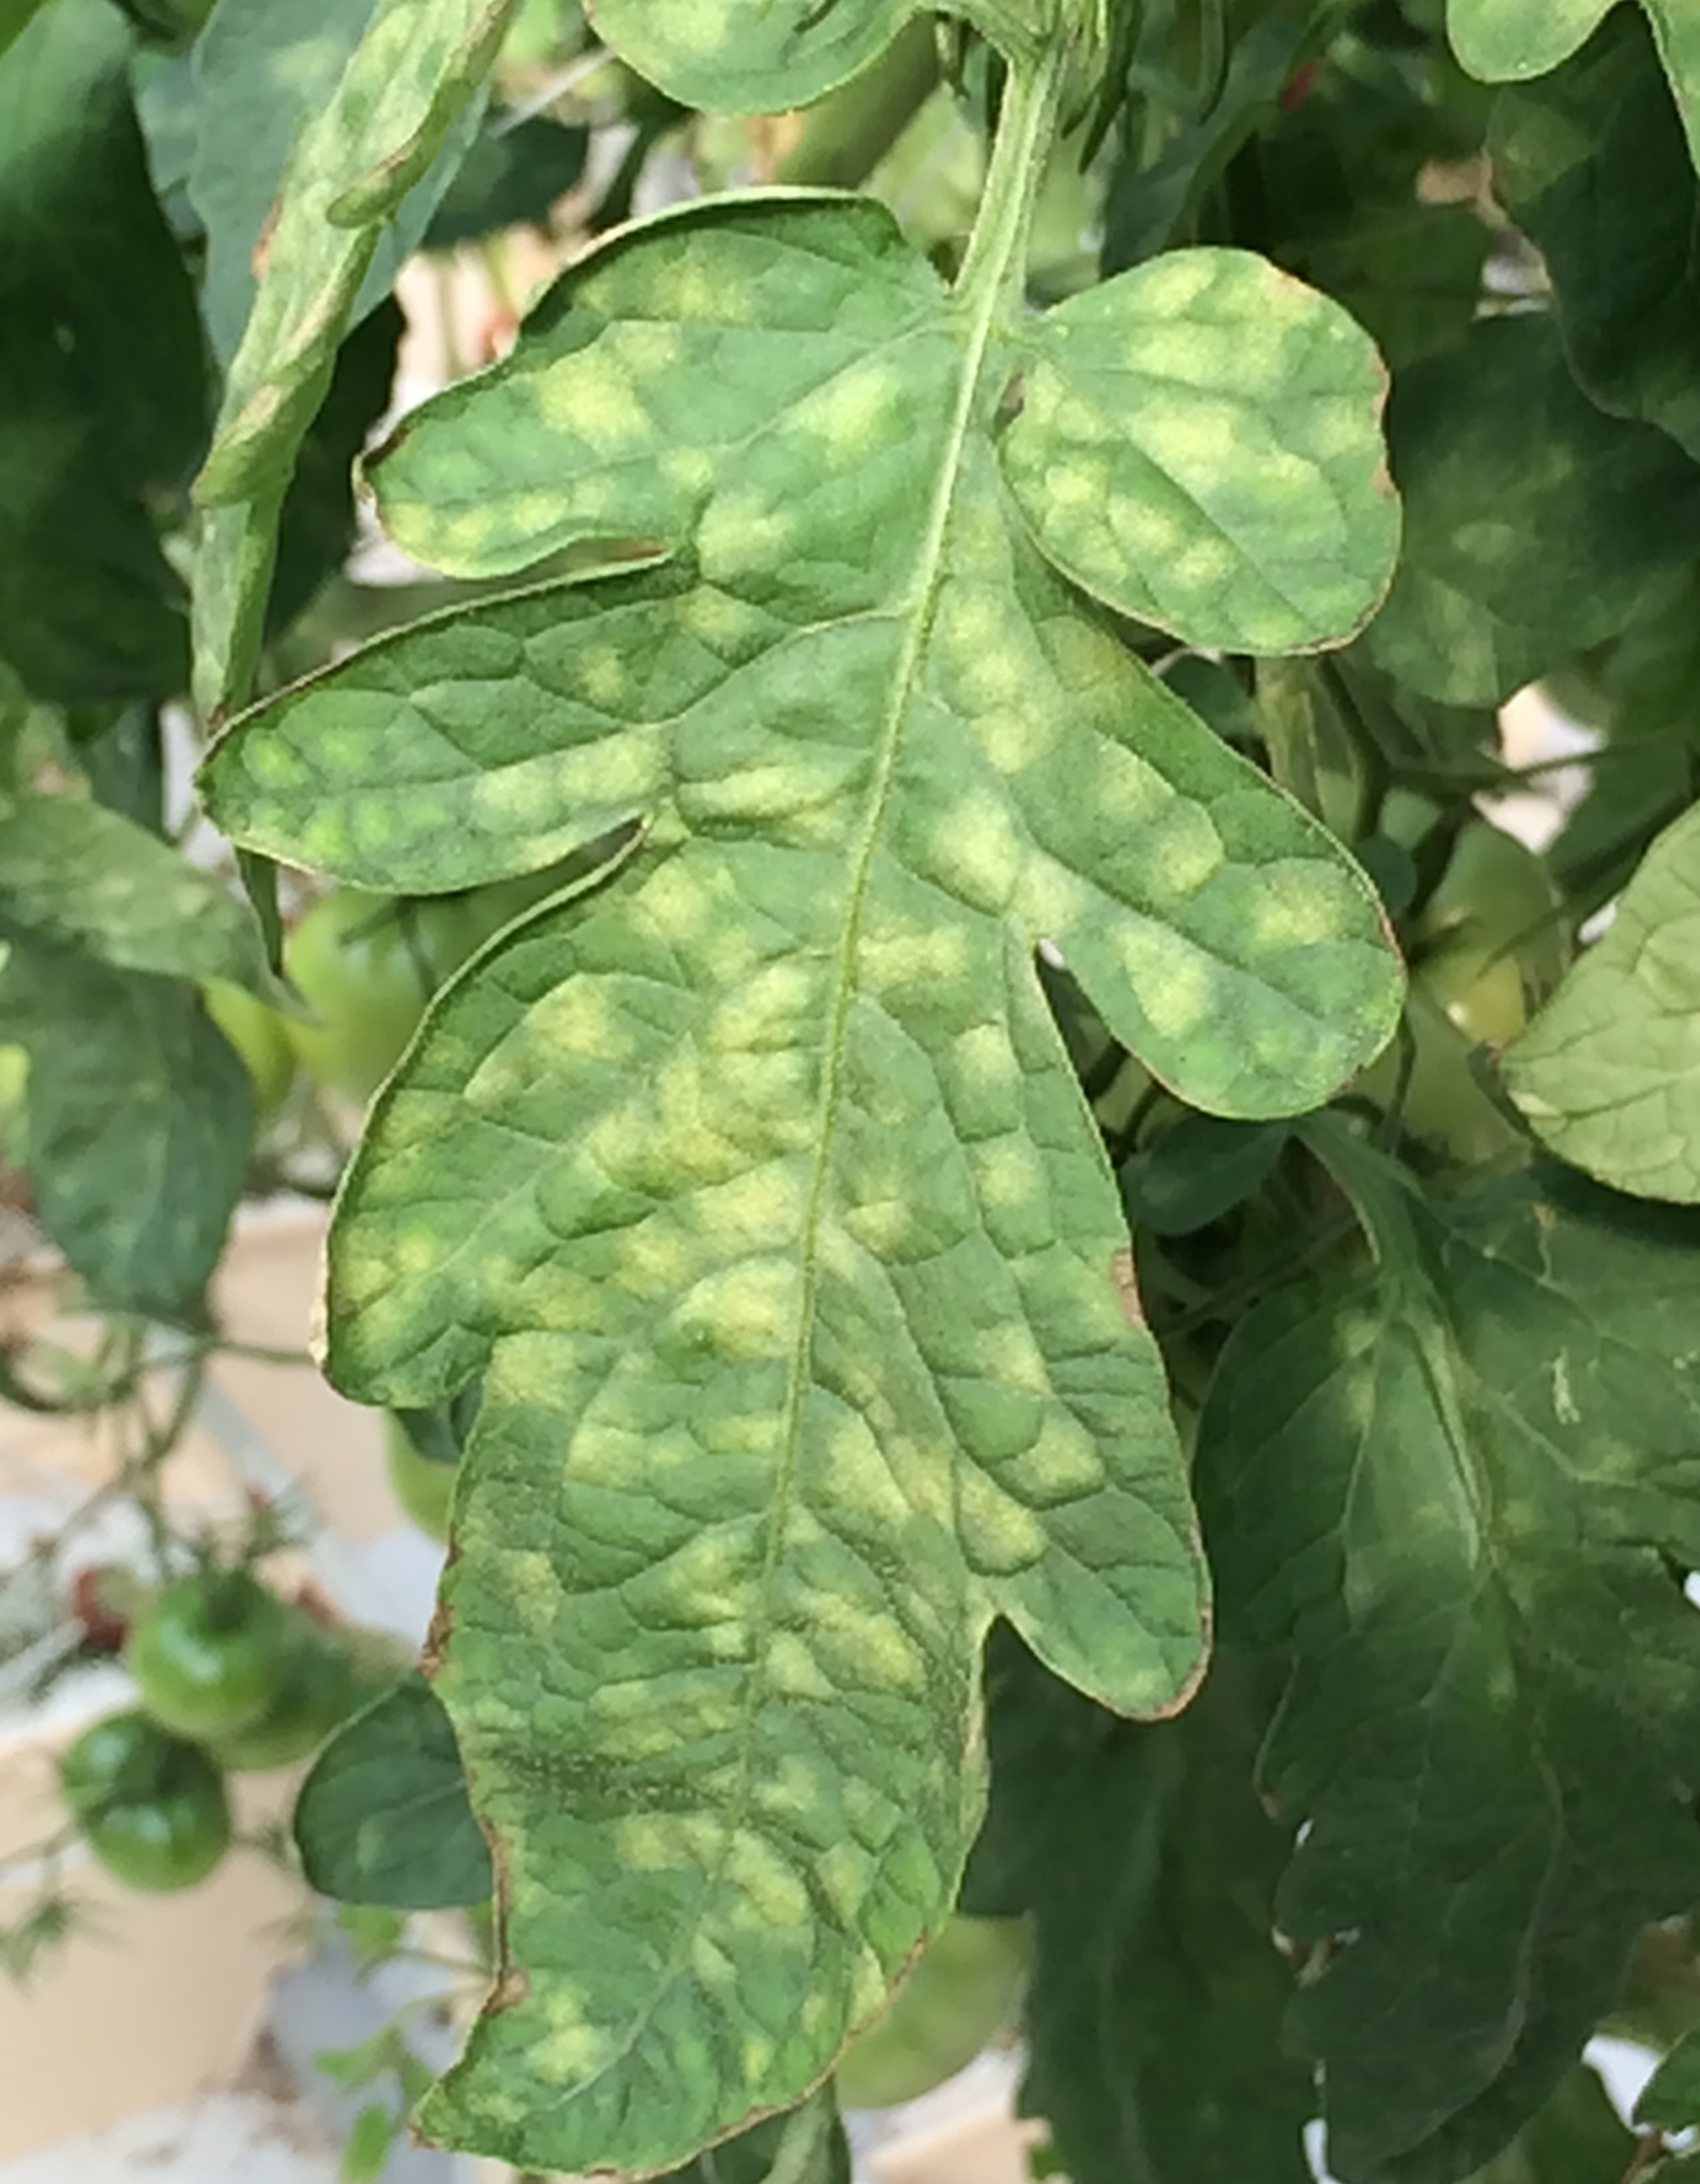 Leaf mold on upper leaf.